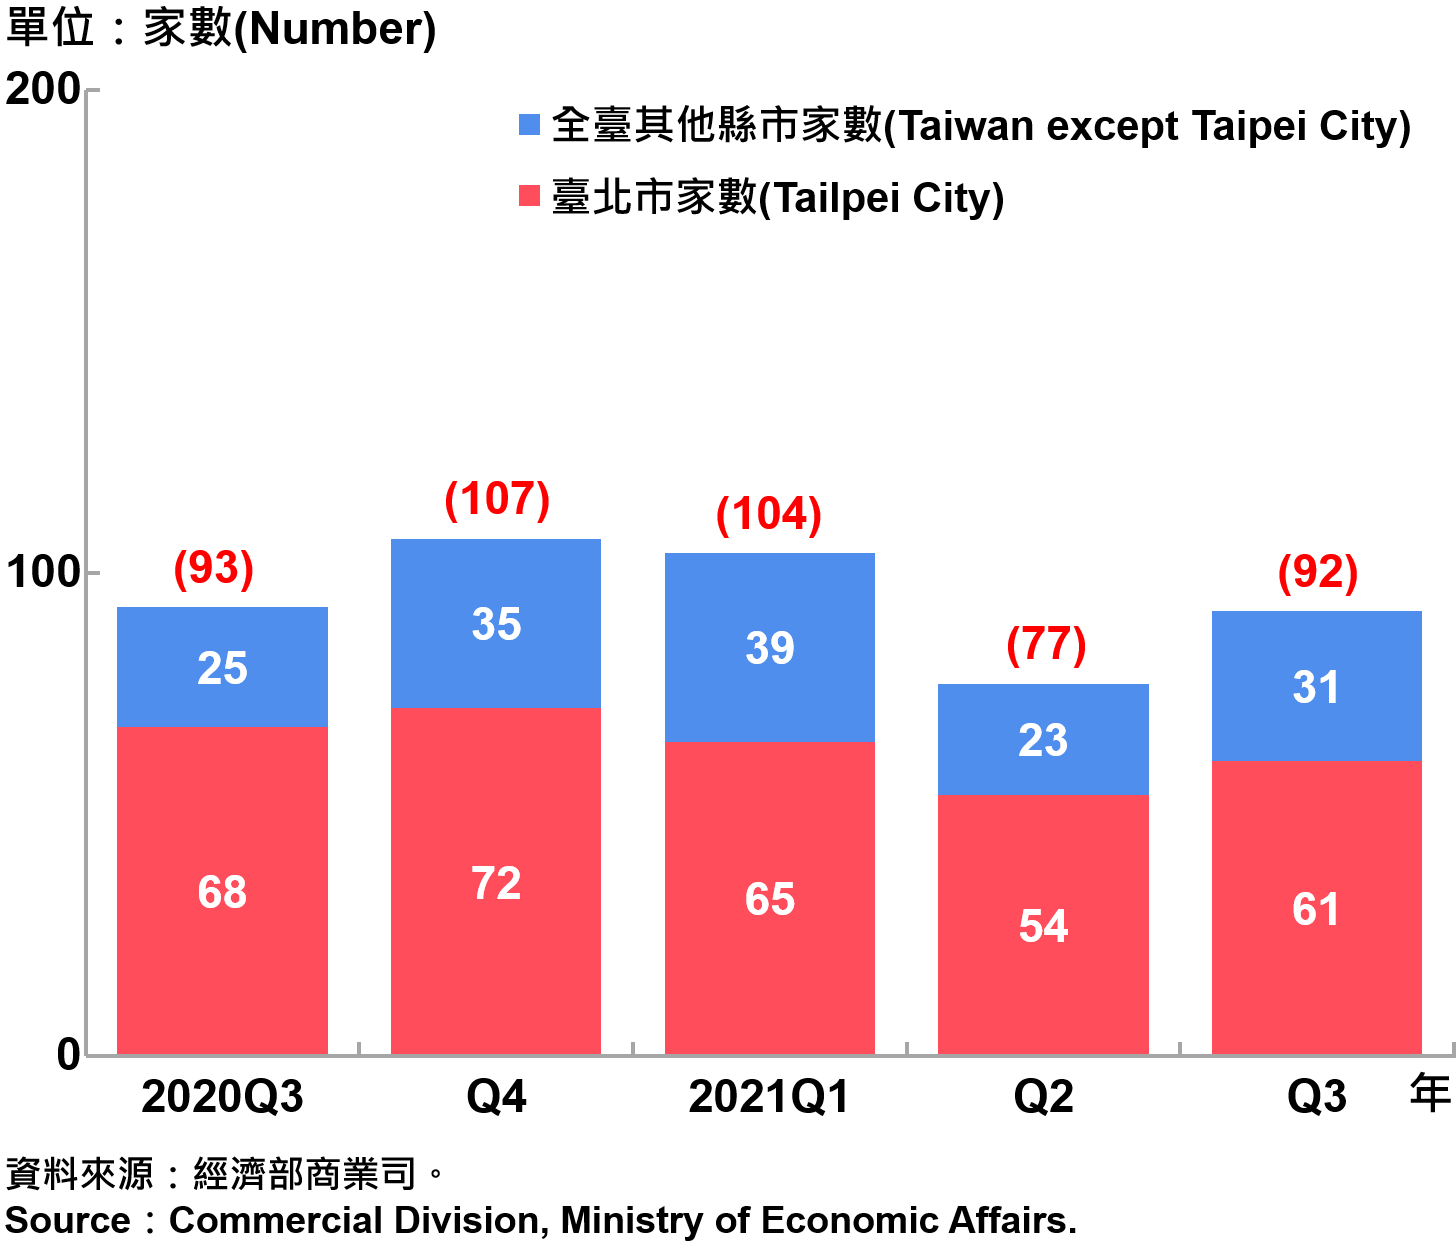 臺北市外商公司新設立家數—20201Q3　Number of Newly Established Foreign Companies in Taipei City—2021Q3